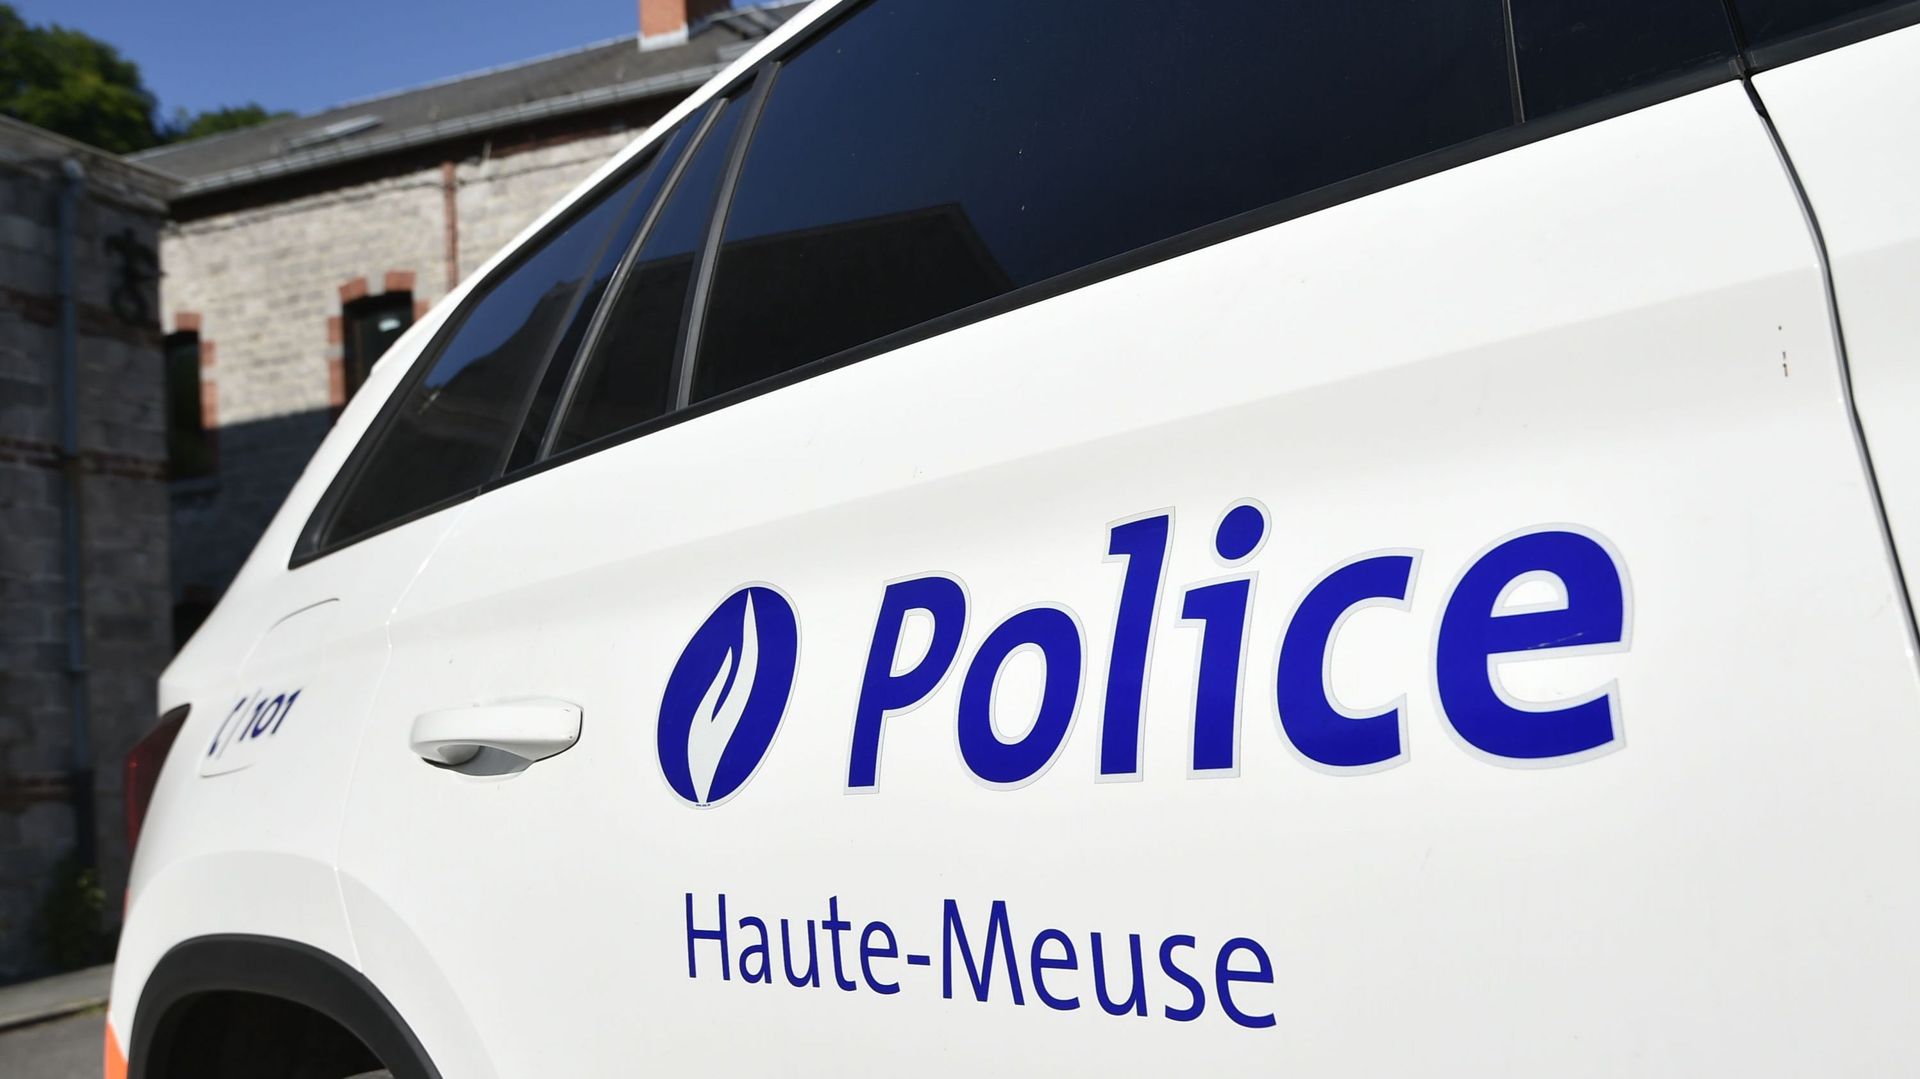 Les cambriolages au sein de la zone de police Haute-Meuse ont chuté de 50% en 6 ans.